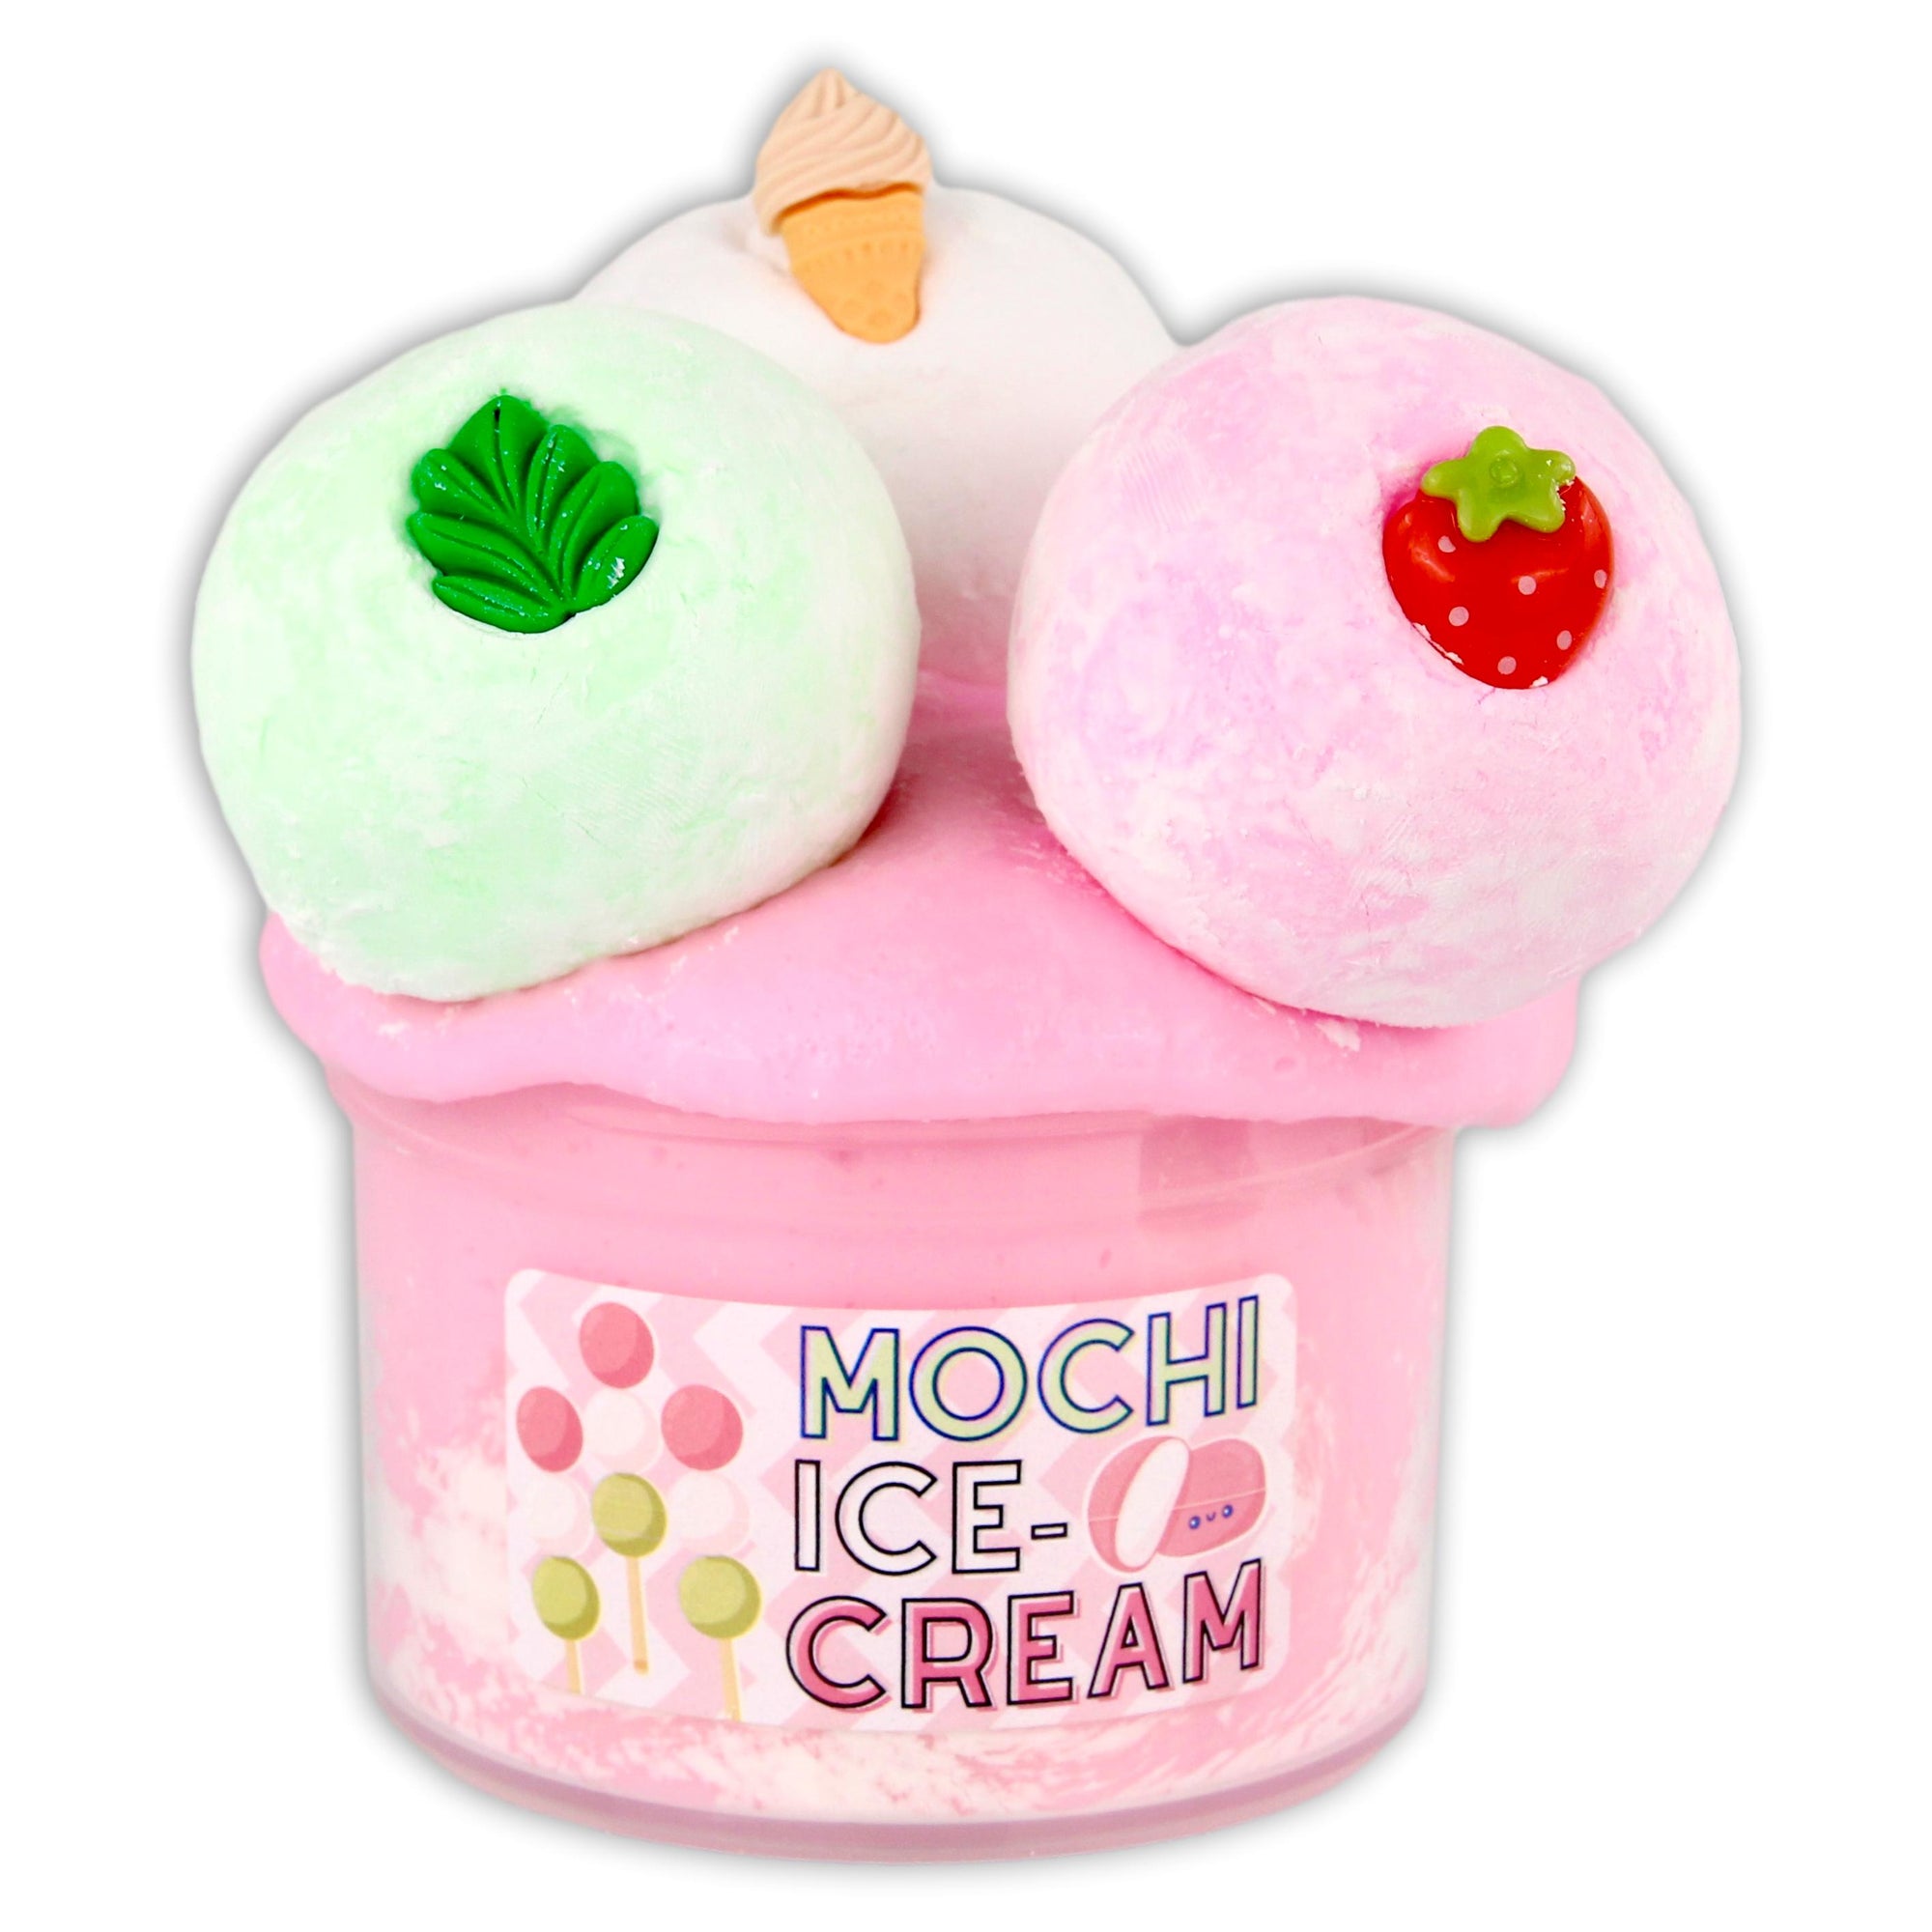 DIY Mochi Ice Cream Kit  Mochi ice cream, Sushi kit, Diy sushi